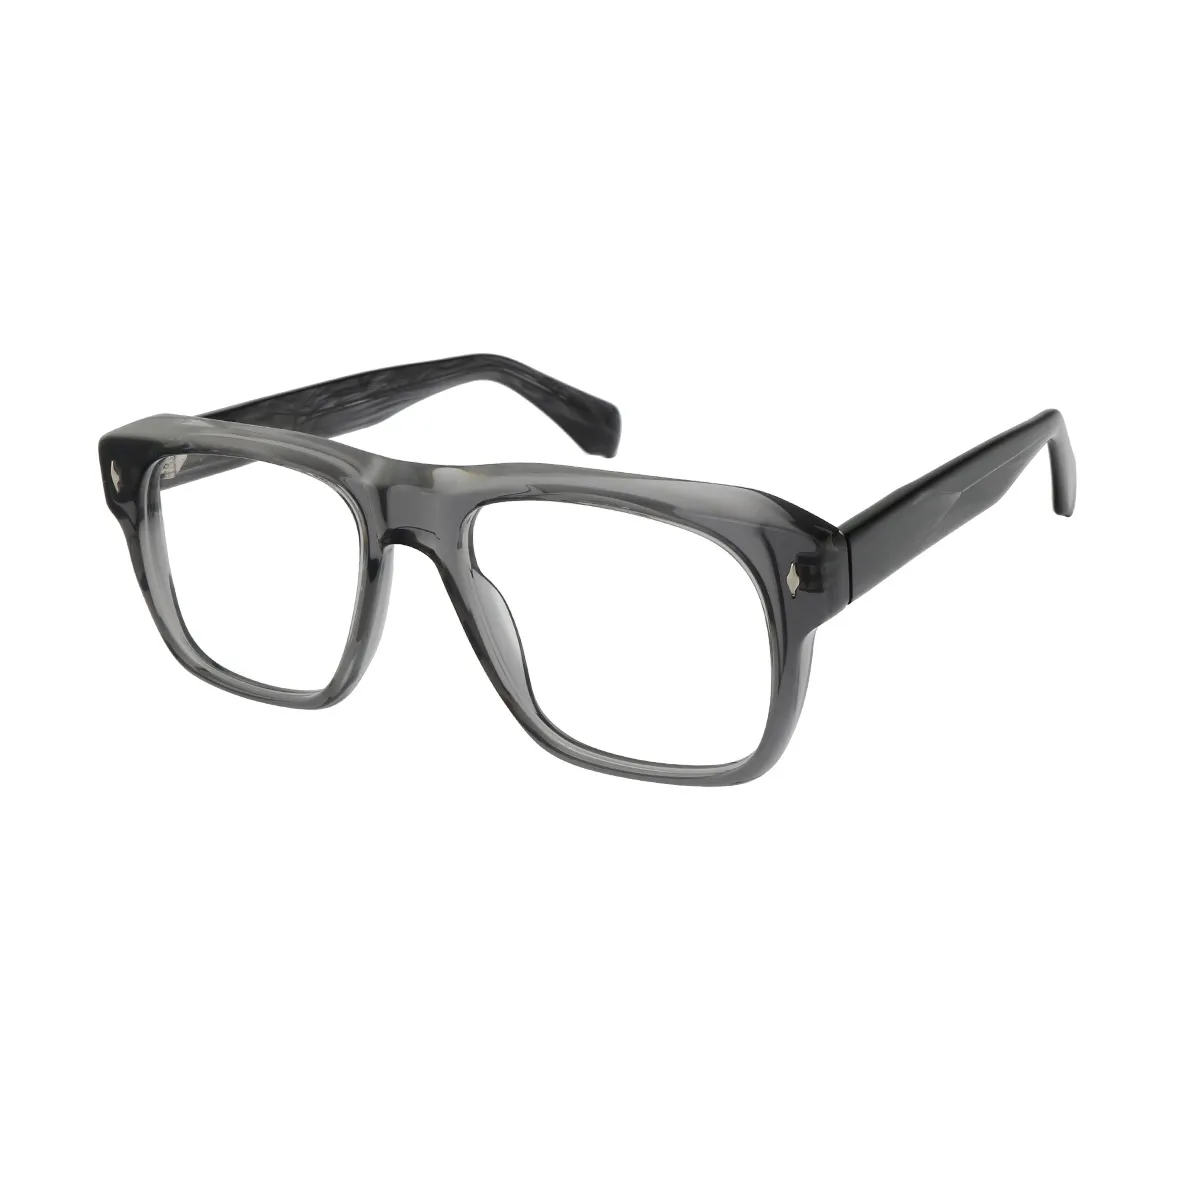 Eden - Square Gray Glasses for Men & Women - EFE